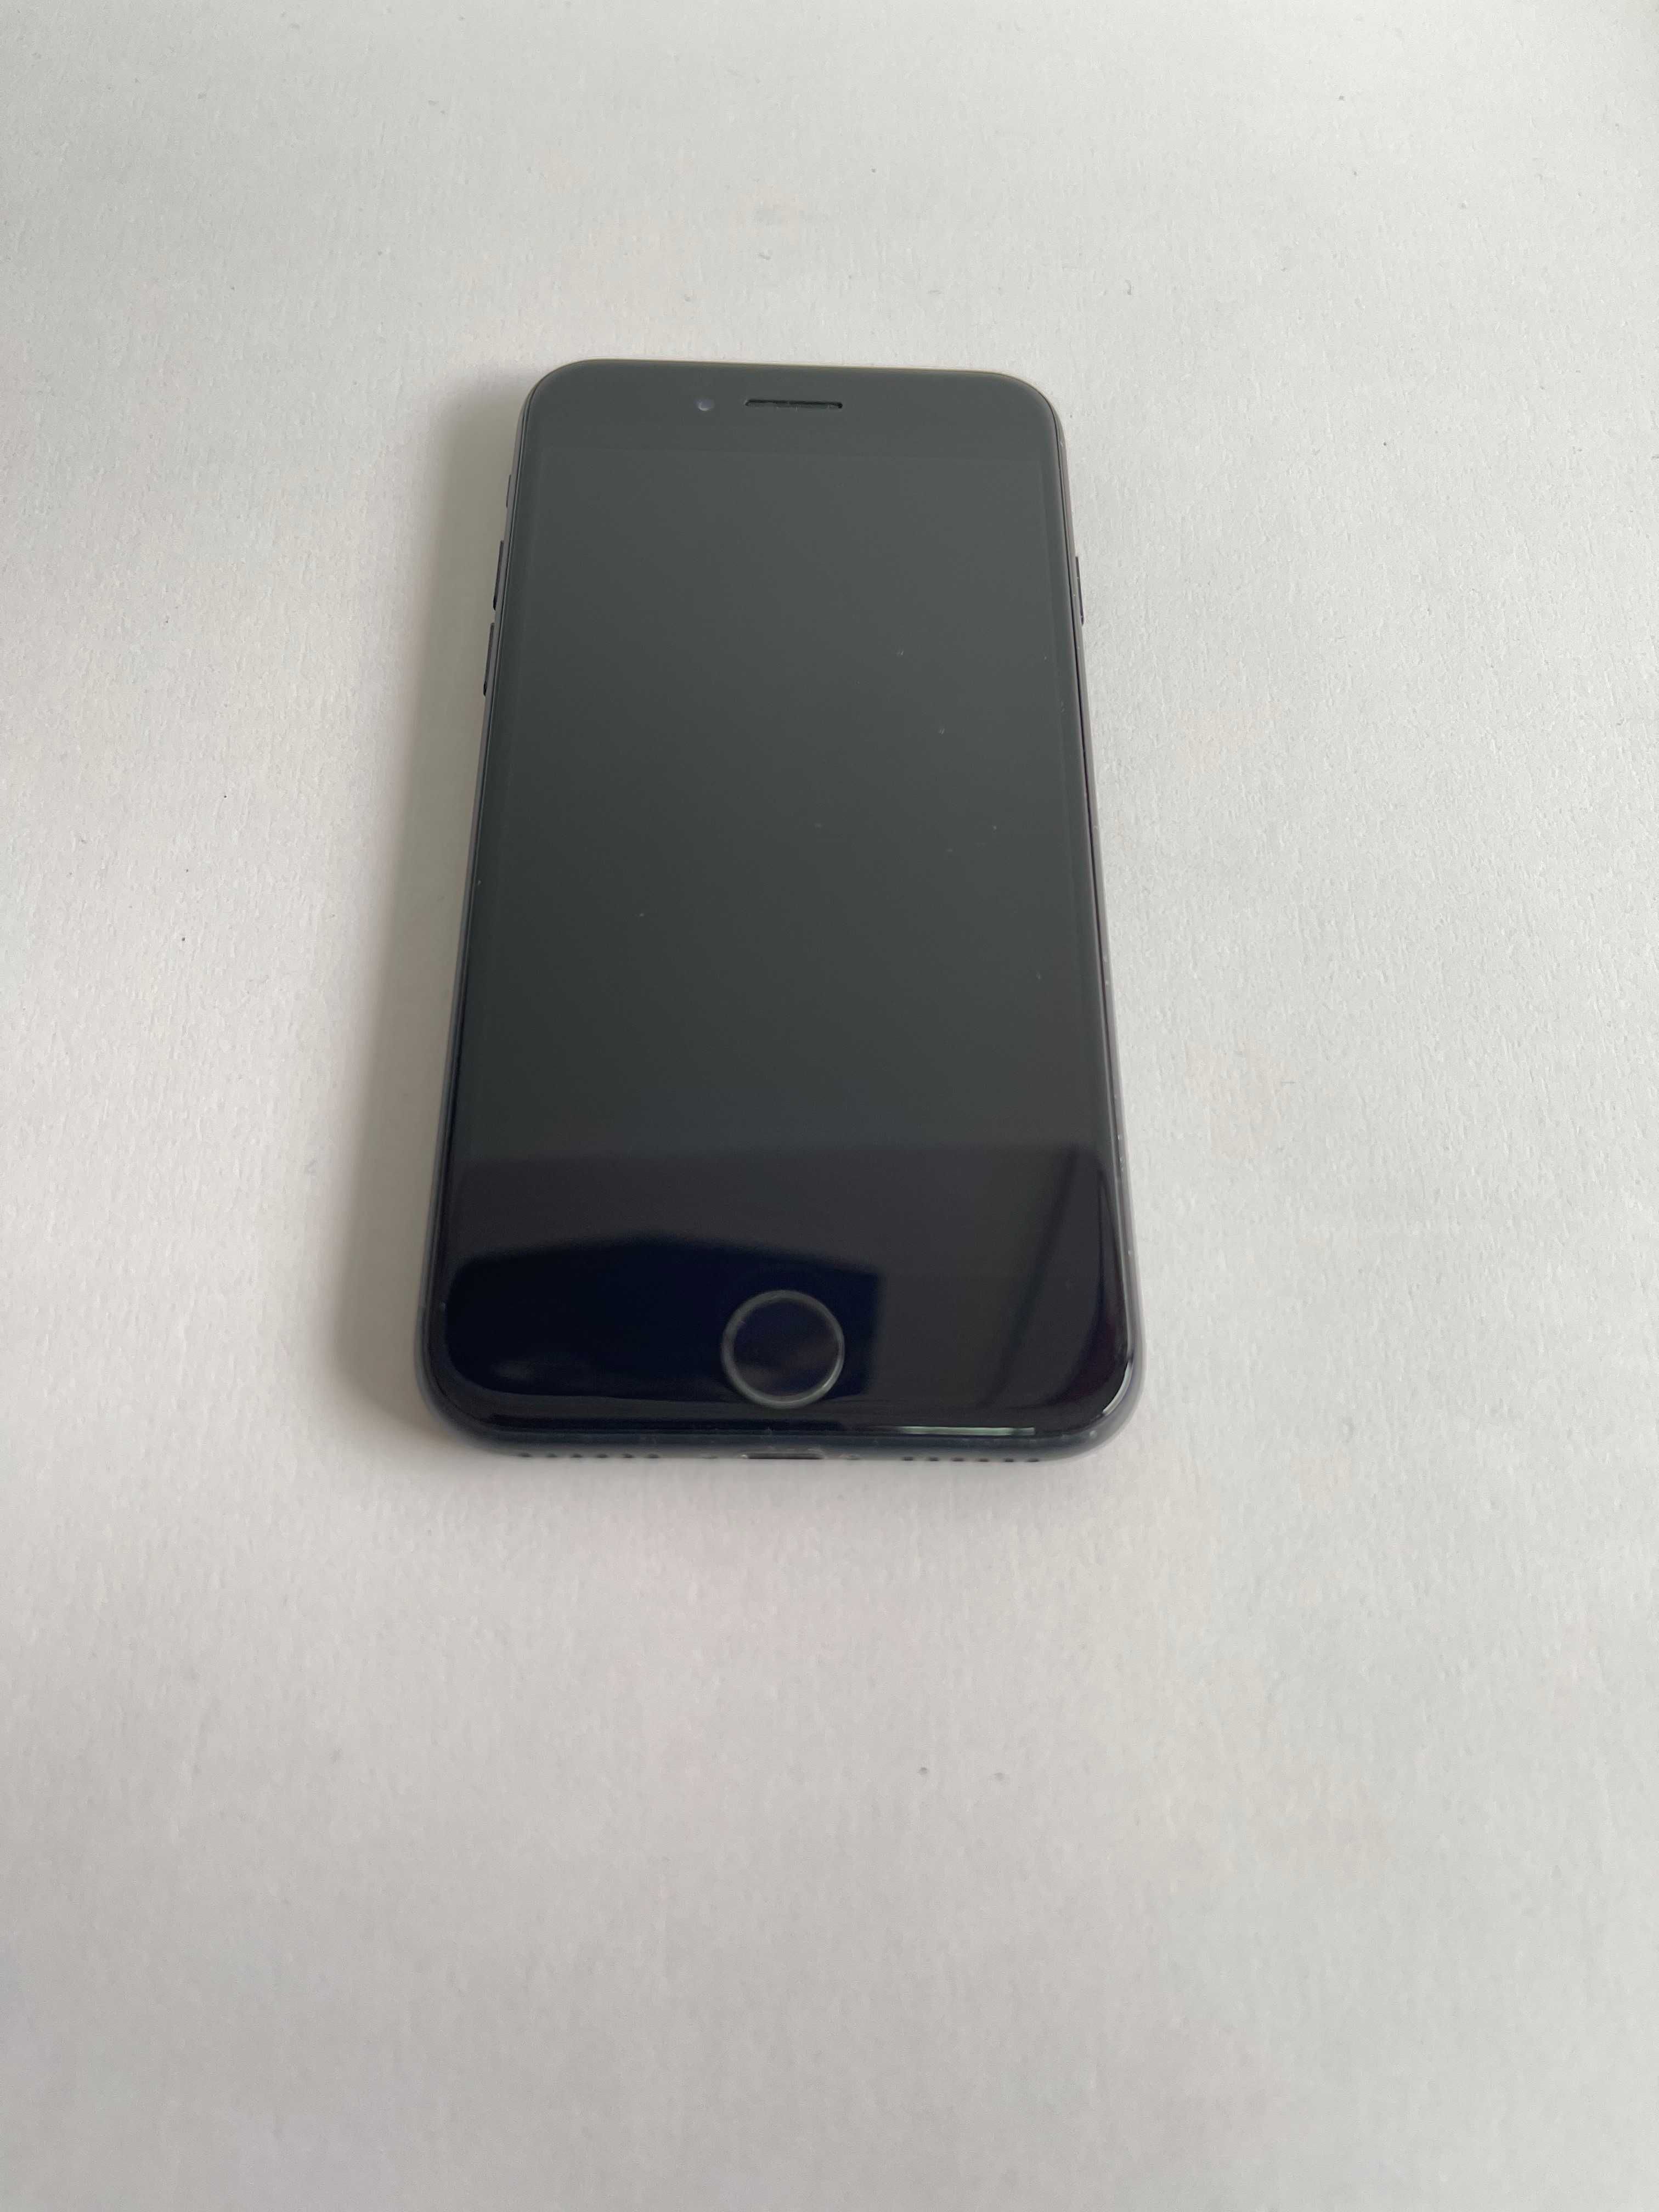 iPhone 7 32Gb, Sprawny w 100%, Bateria 82%,  Kolor Czarny